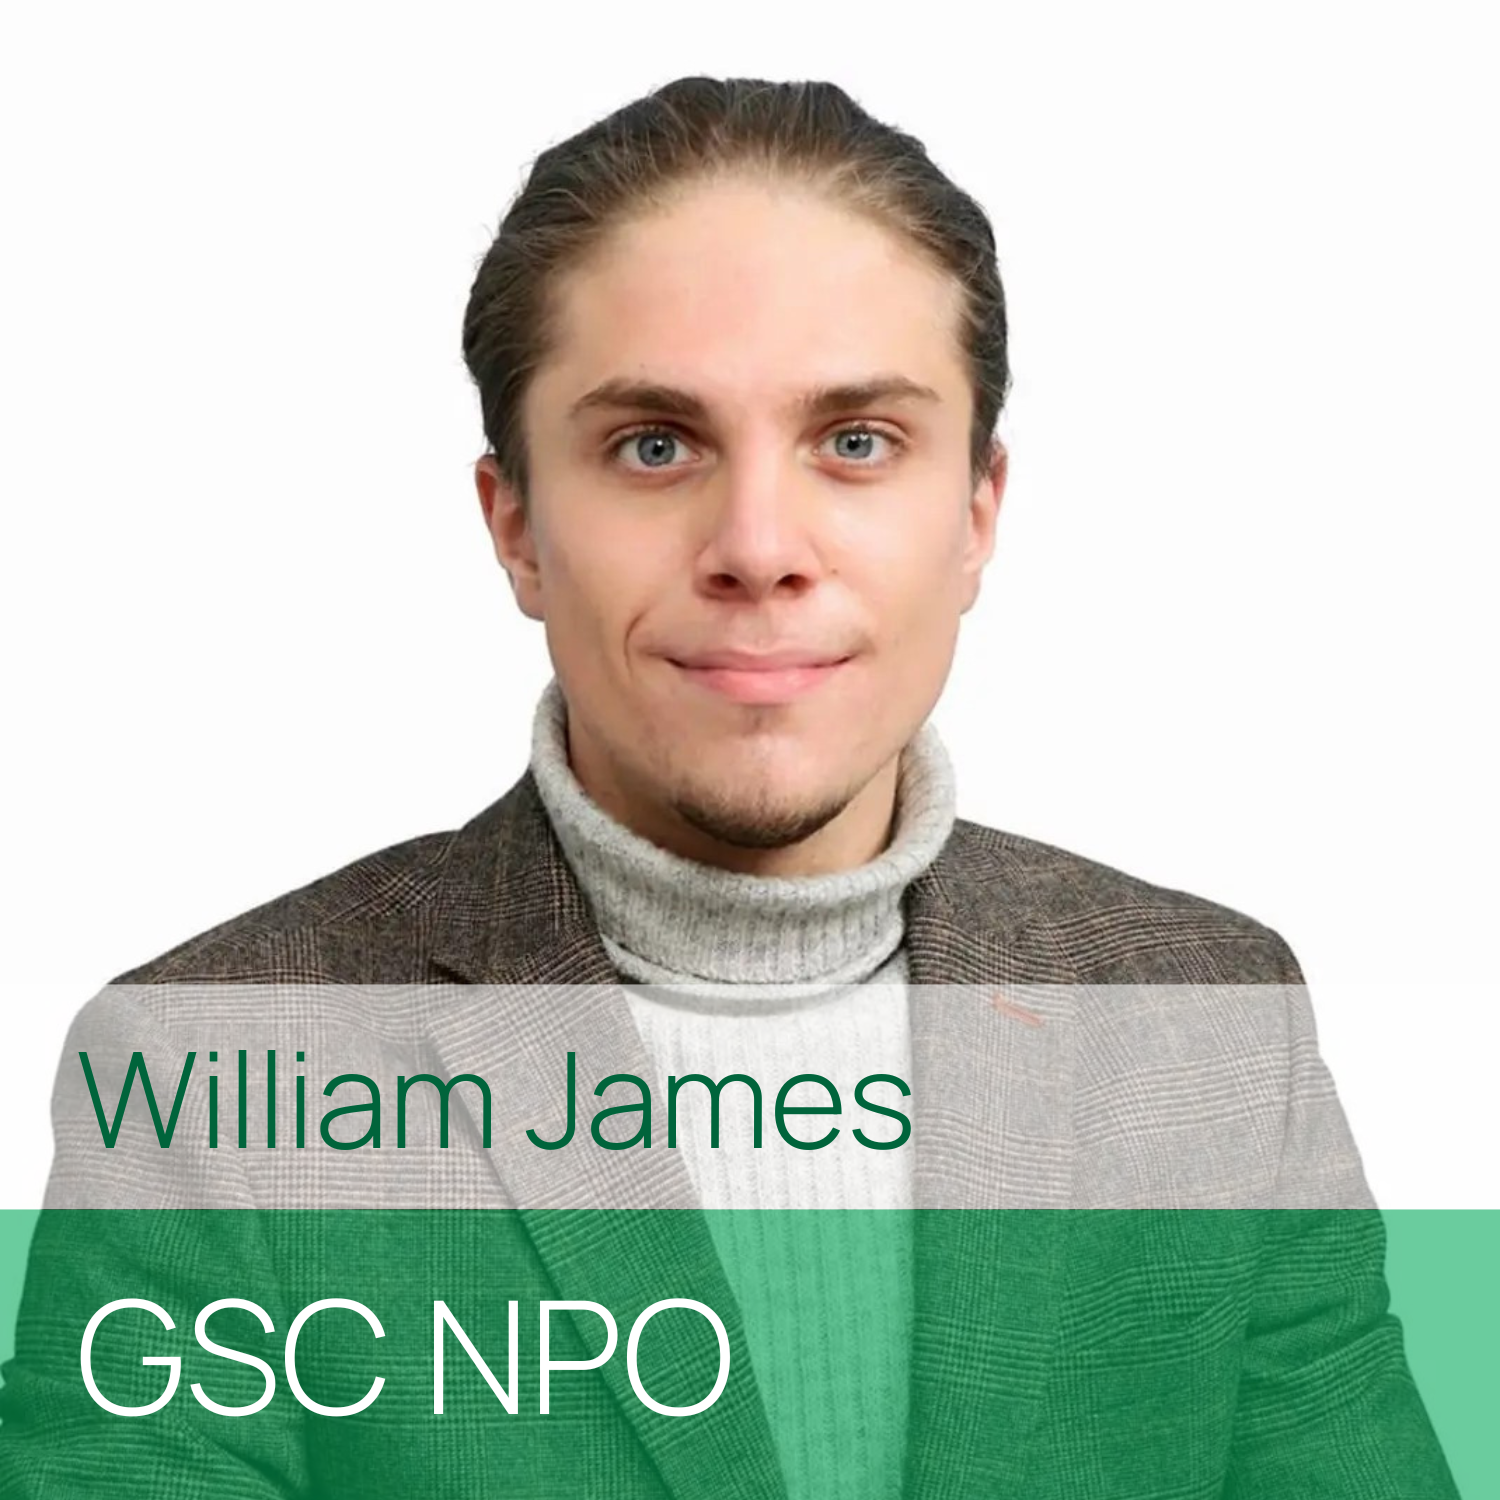 William James, GSC NPO